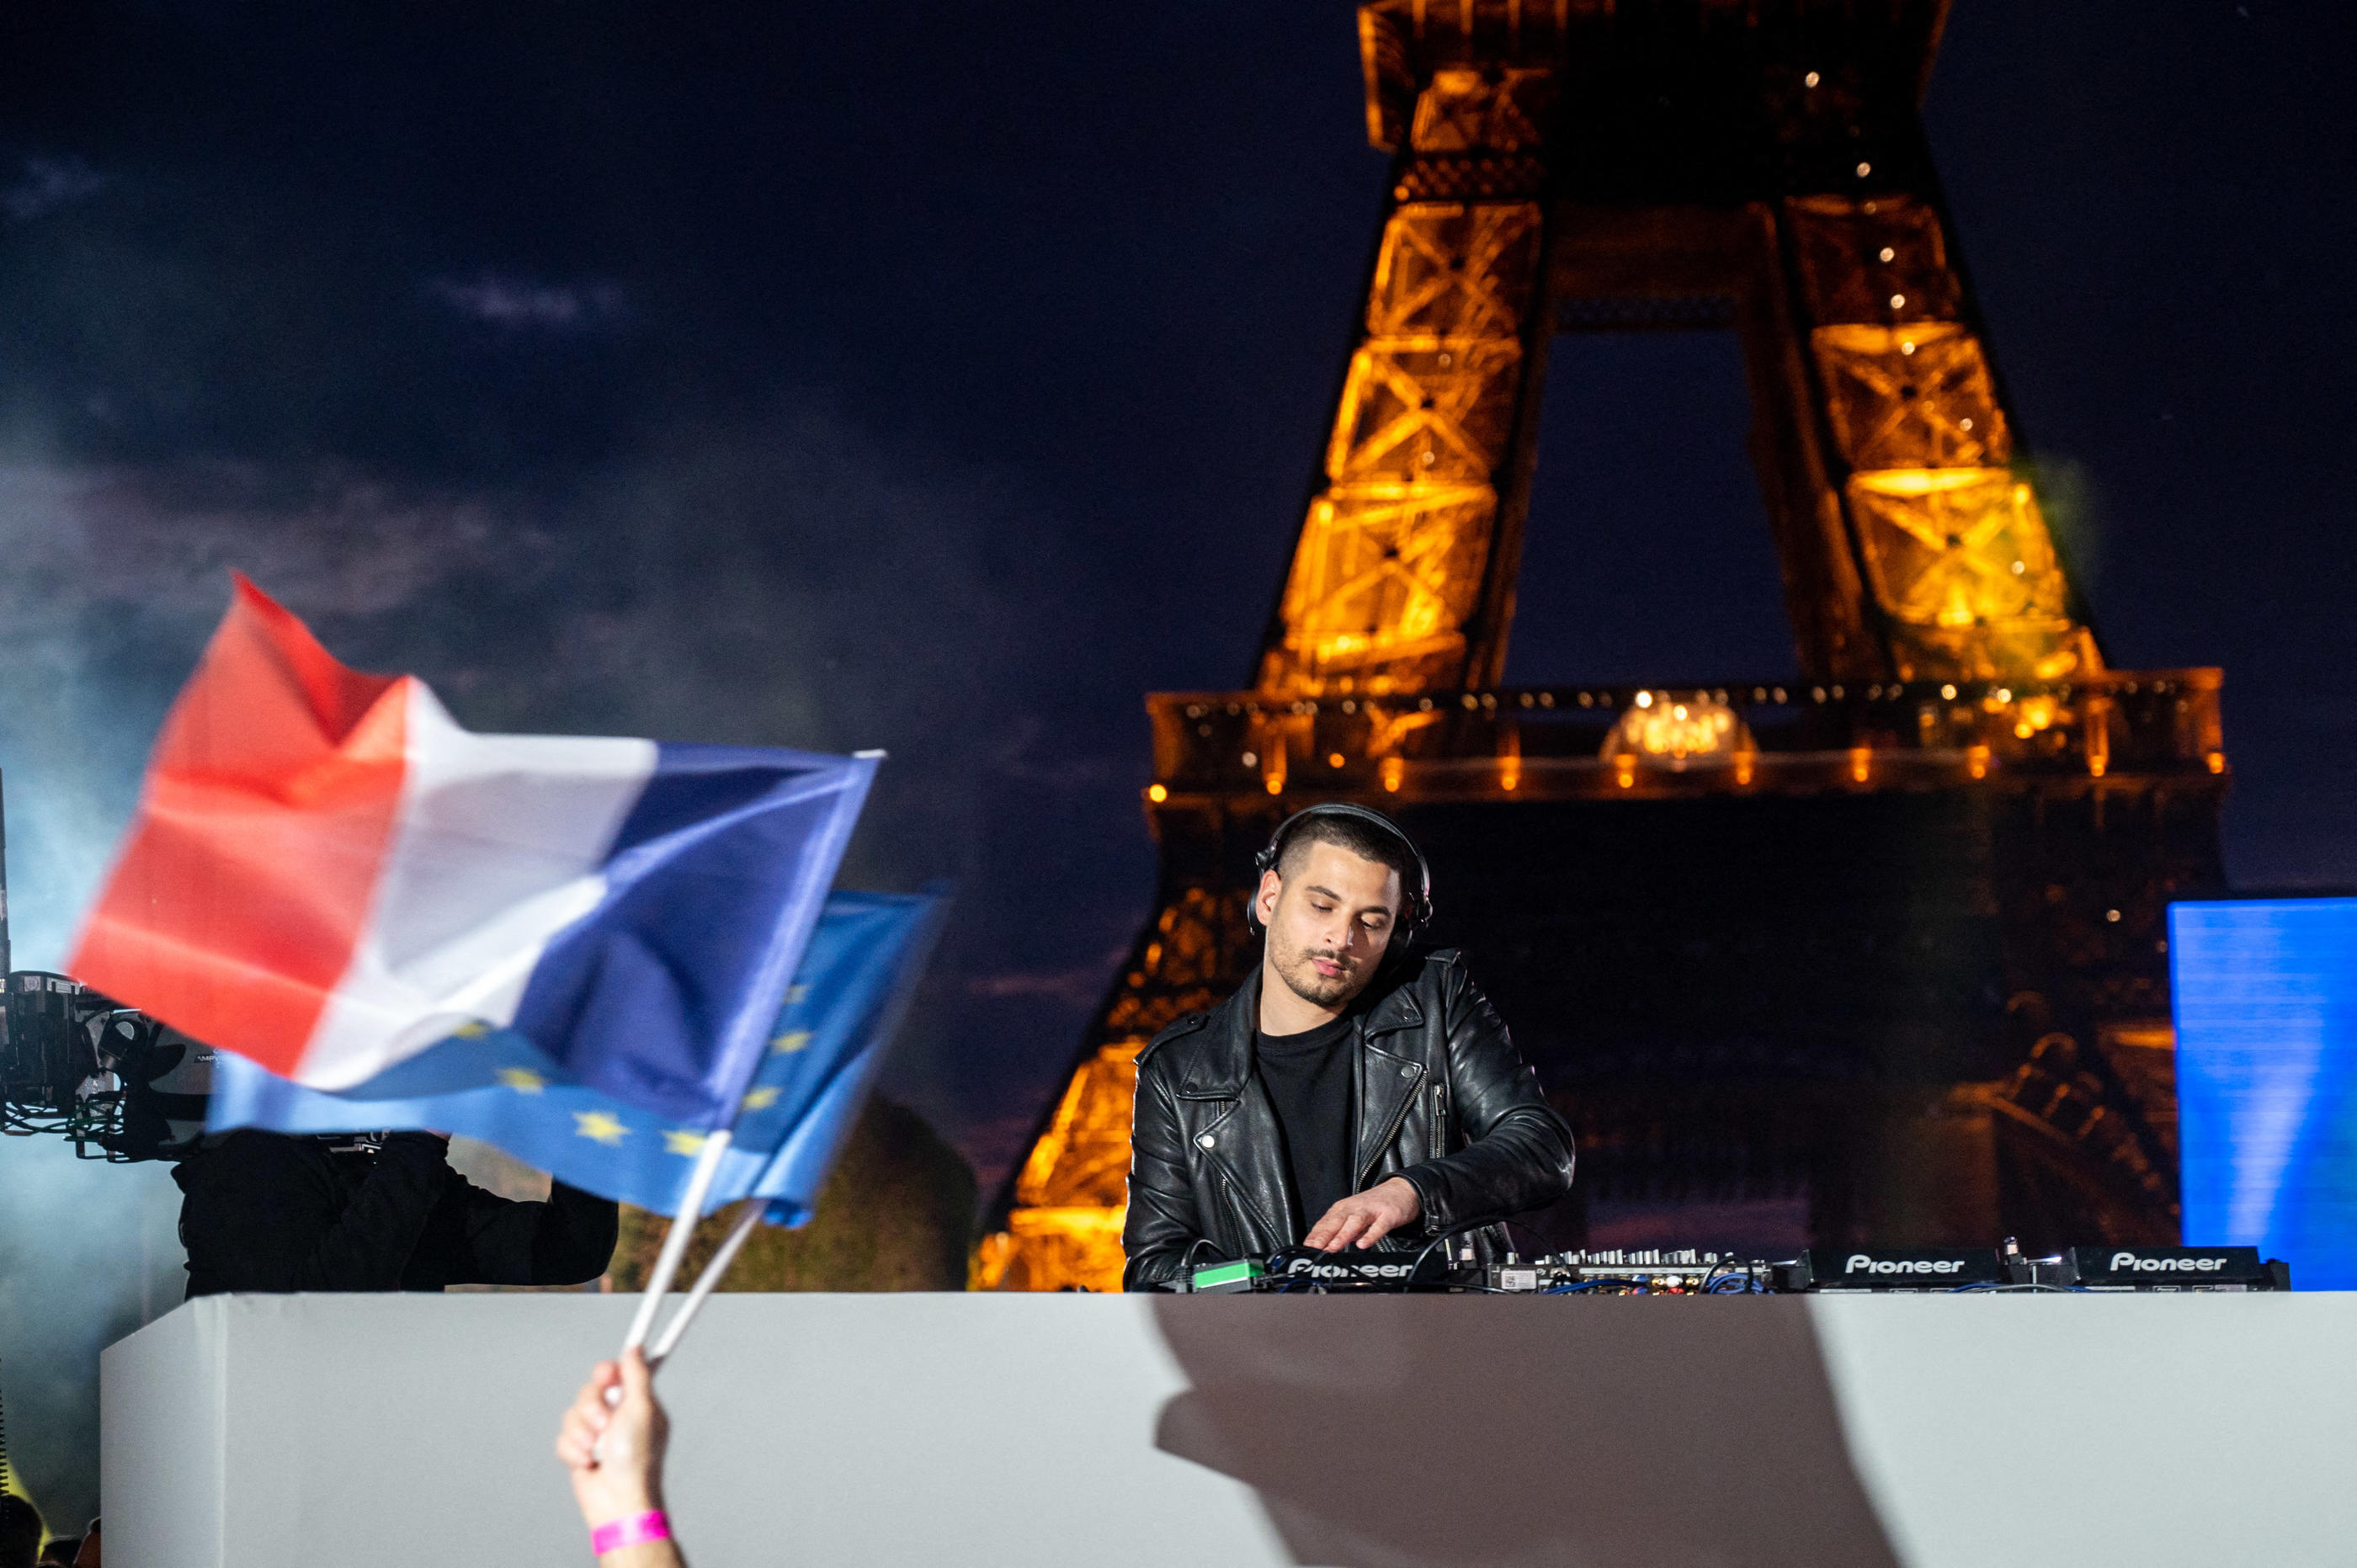 Jérôme Vanetty, DJ de 30 ans, s'est retrouvé sur le devant de la scène dimanche soir en mixant lors de la soirée du Champ-de-Mars. Abd Rabbo Ammar